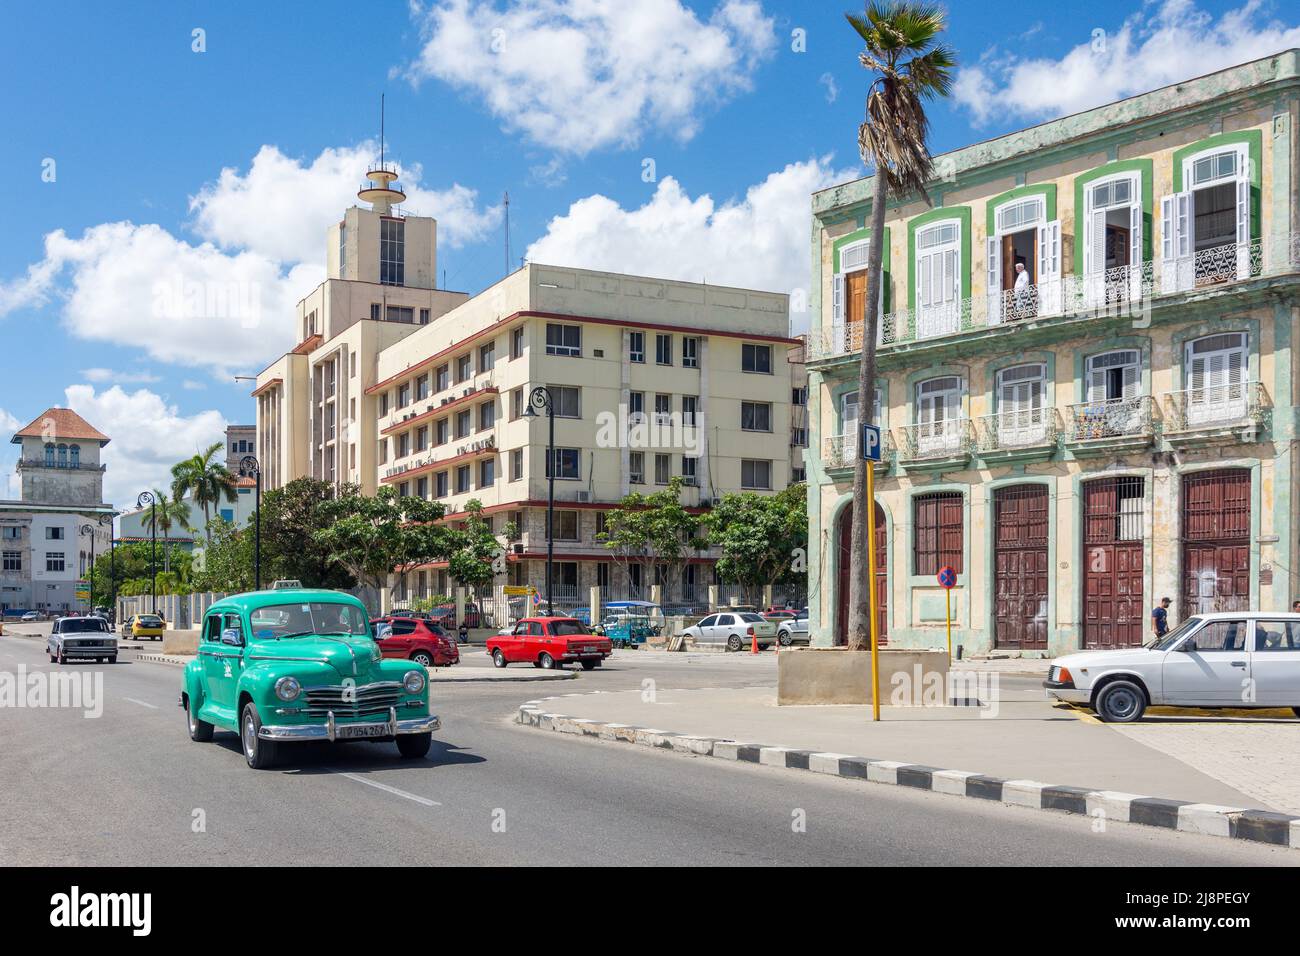 Auto americana classica in strada, l'Avana Vecchia, l'Avana, la Habana, Repubblica di Cuba Foto Stock